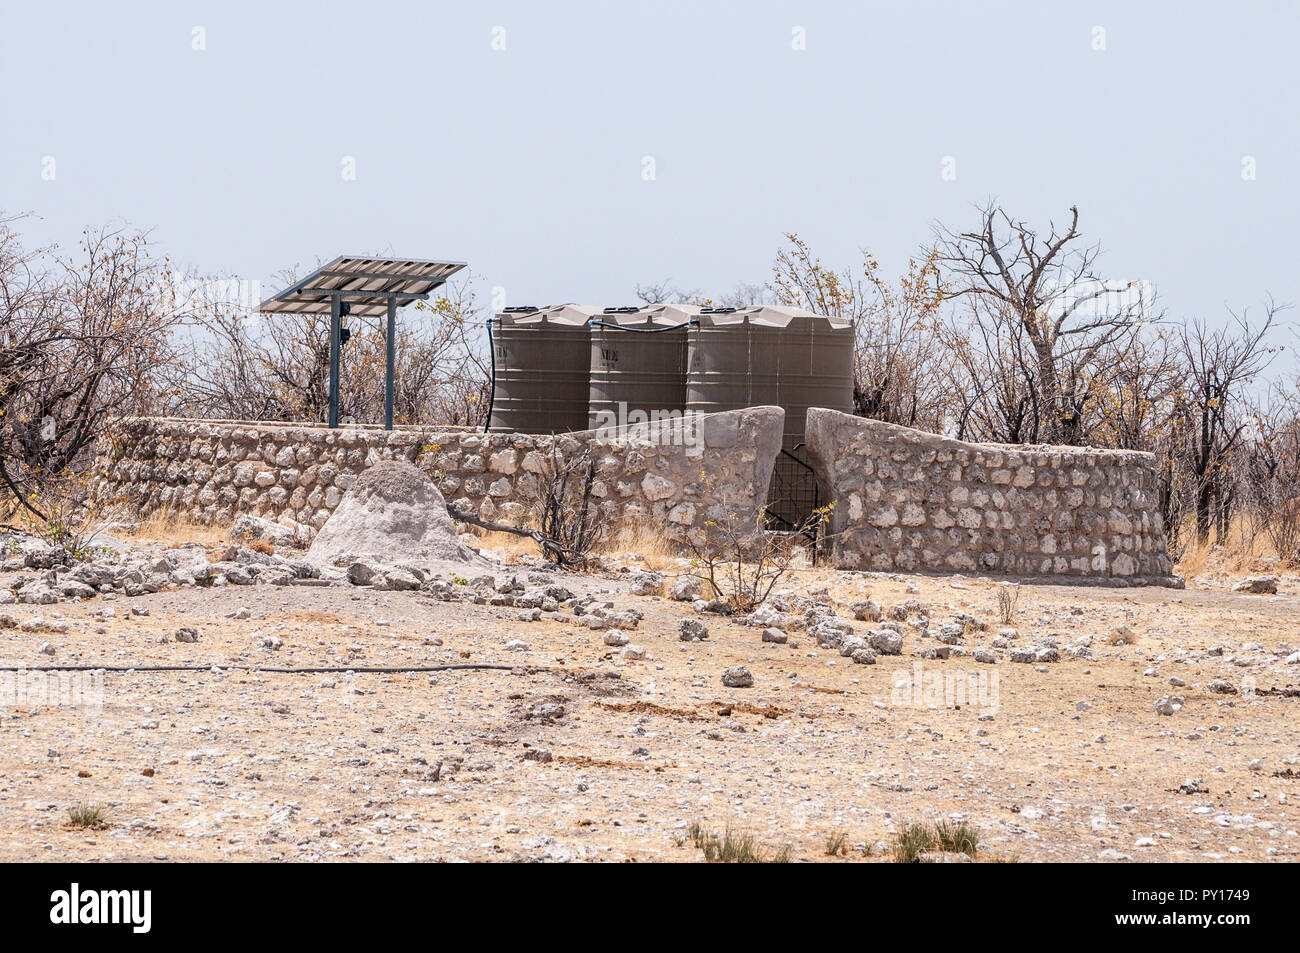 Les réservoirs d'eau alimenté par des panneaux solaires pour l'homme fait les mares, Etosha National Park, Namibie Banque D'Images